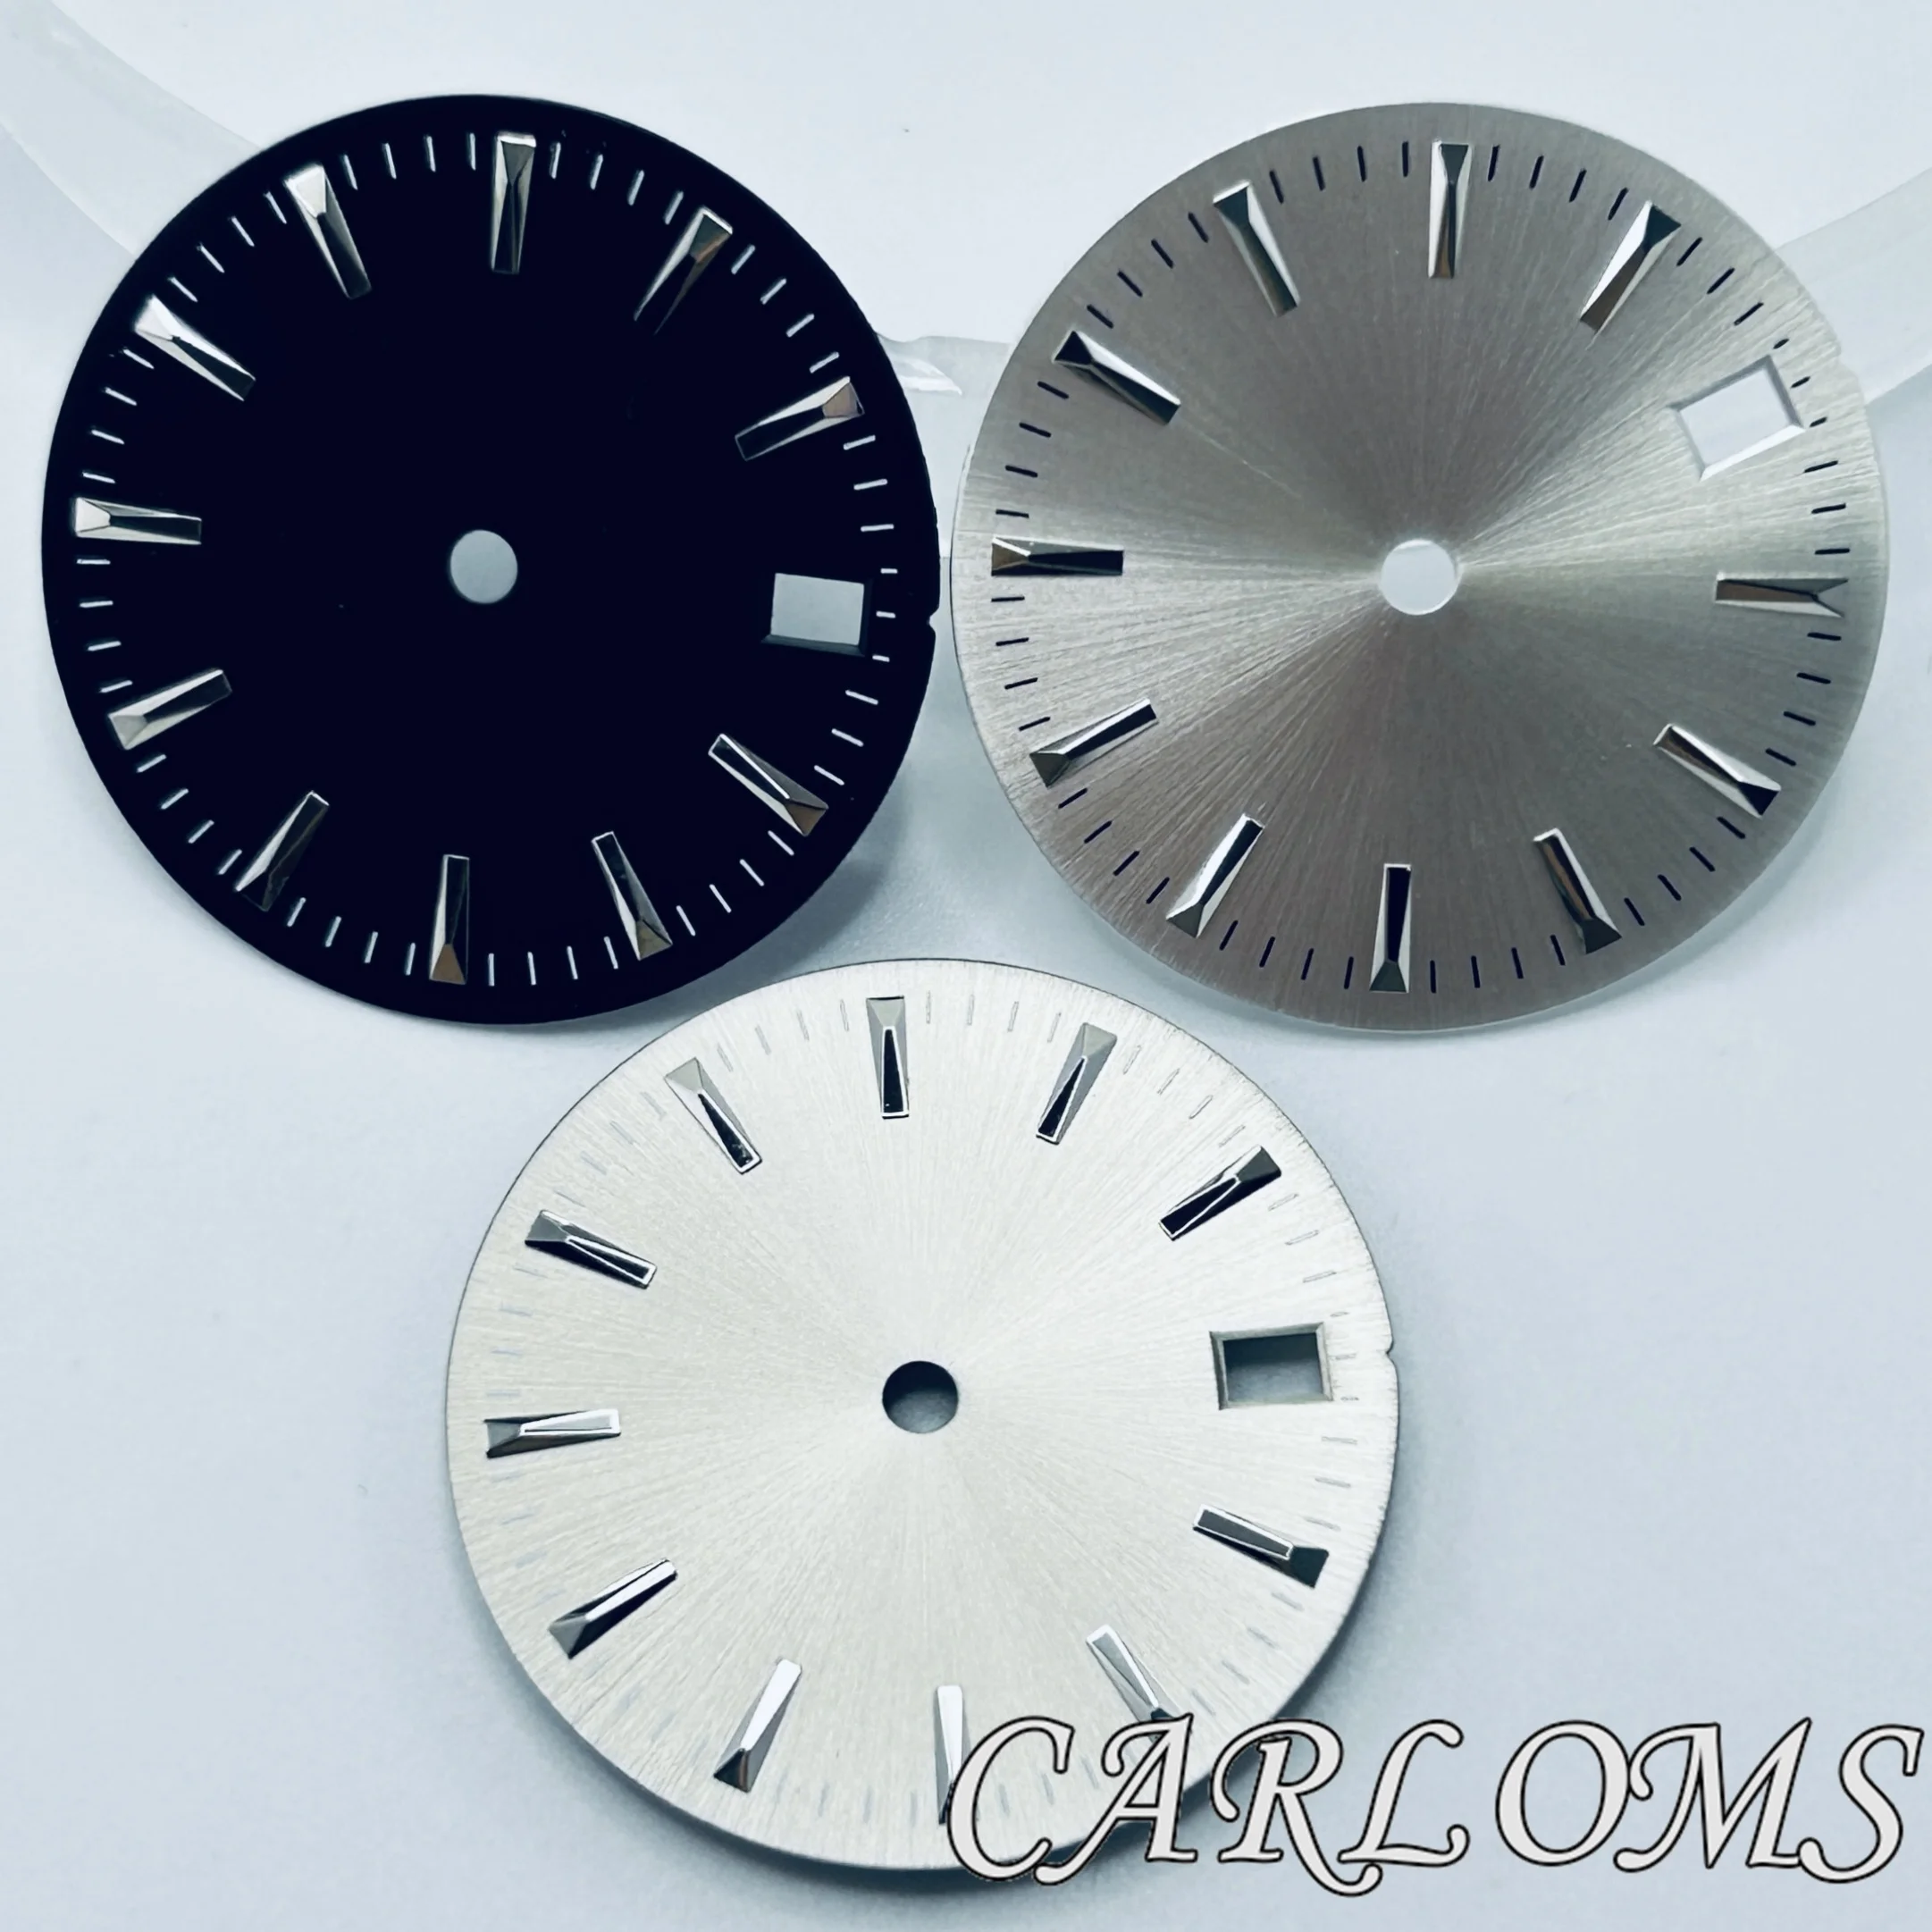 

Часы наручные стерильные Серебристые/черные/серые, 28,5 мм